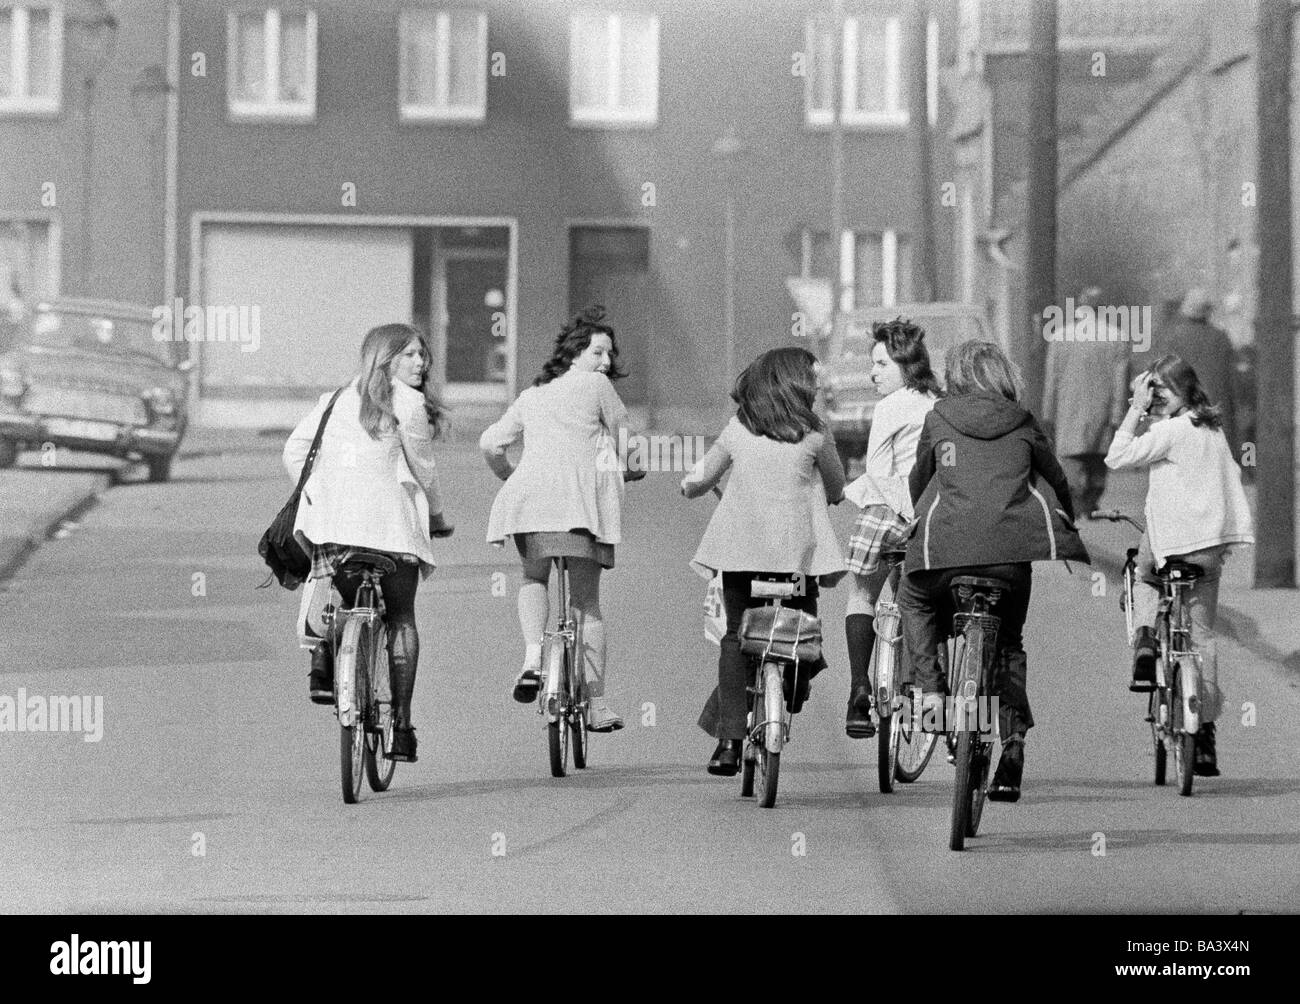 70er Jahre, schwarz / weiß Foto, Menschen, sechs junge Mädchen auf Fahrrädern fahren nebeneinander auf einer befahrenen Straße, Vergnügungsreise, Ausflug, im Alter von 13 bis 16 Jahre Stockfoto